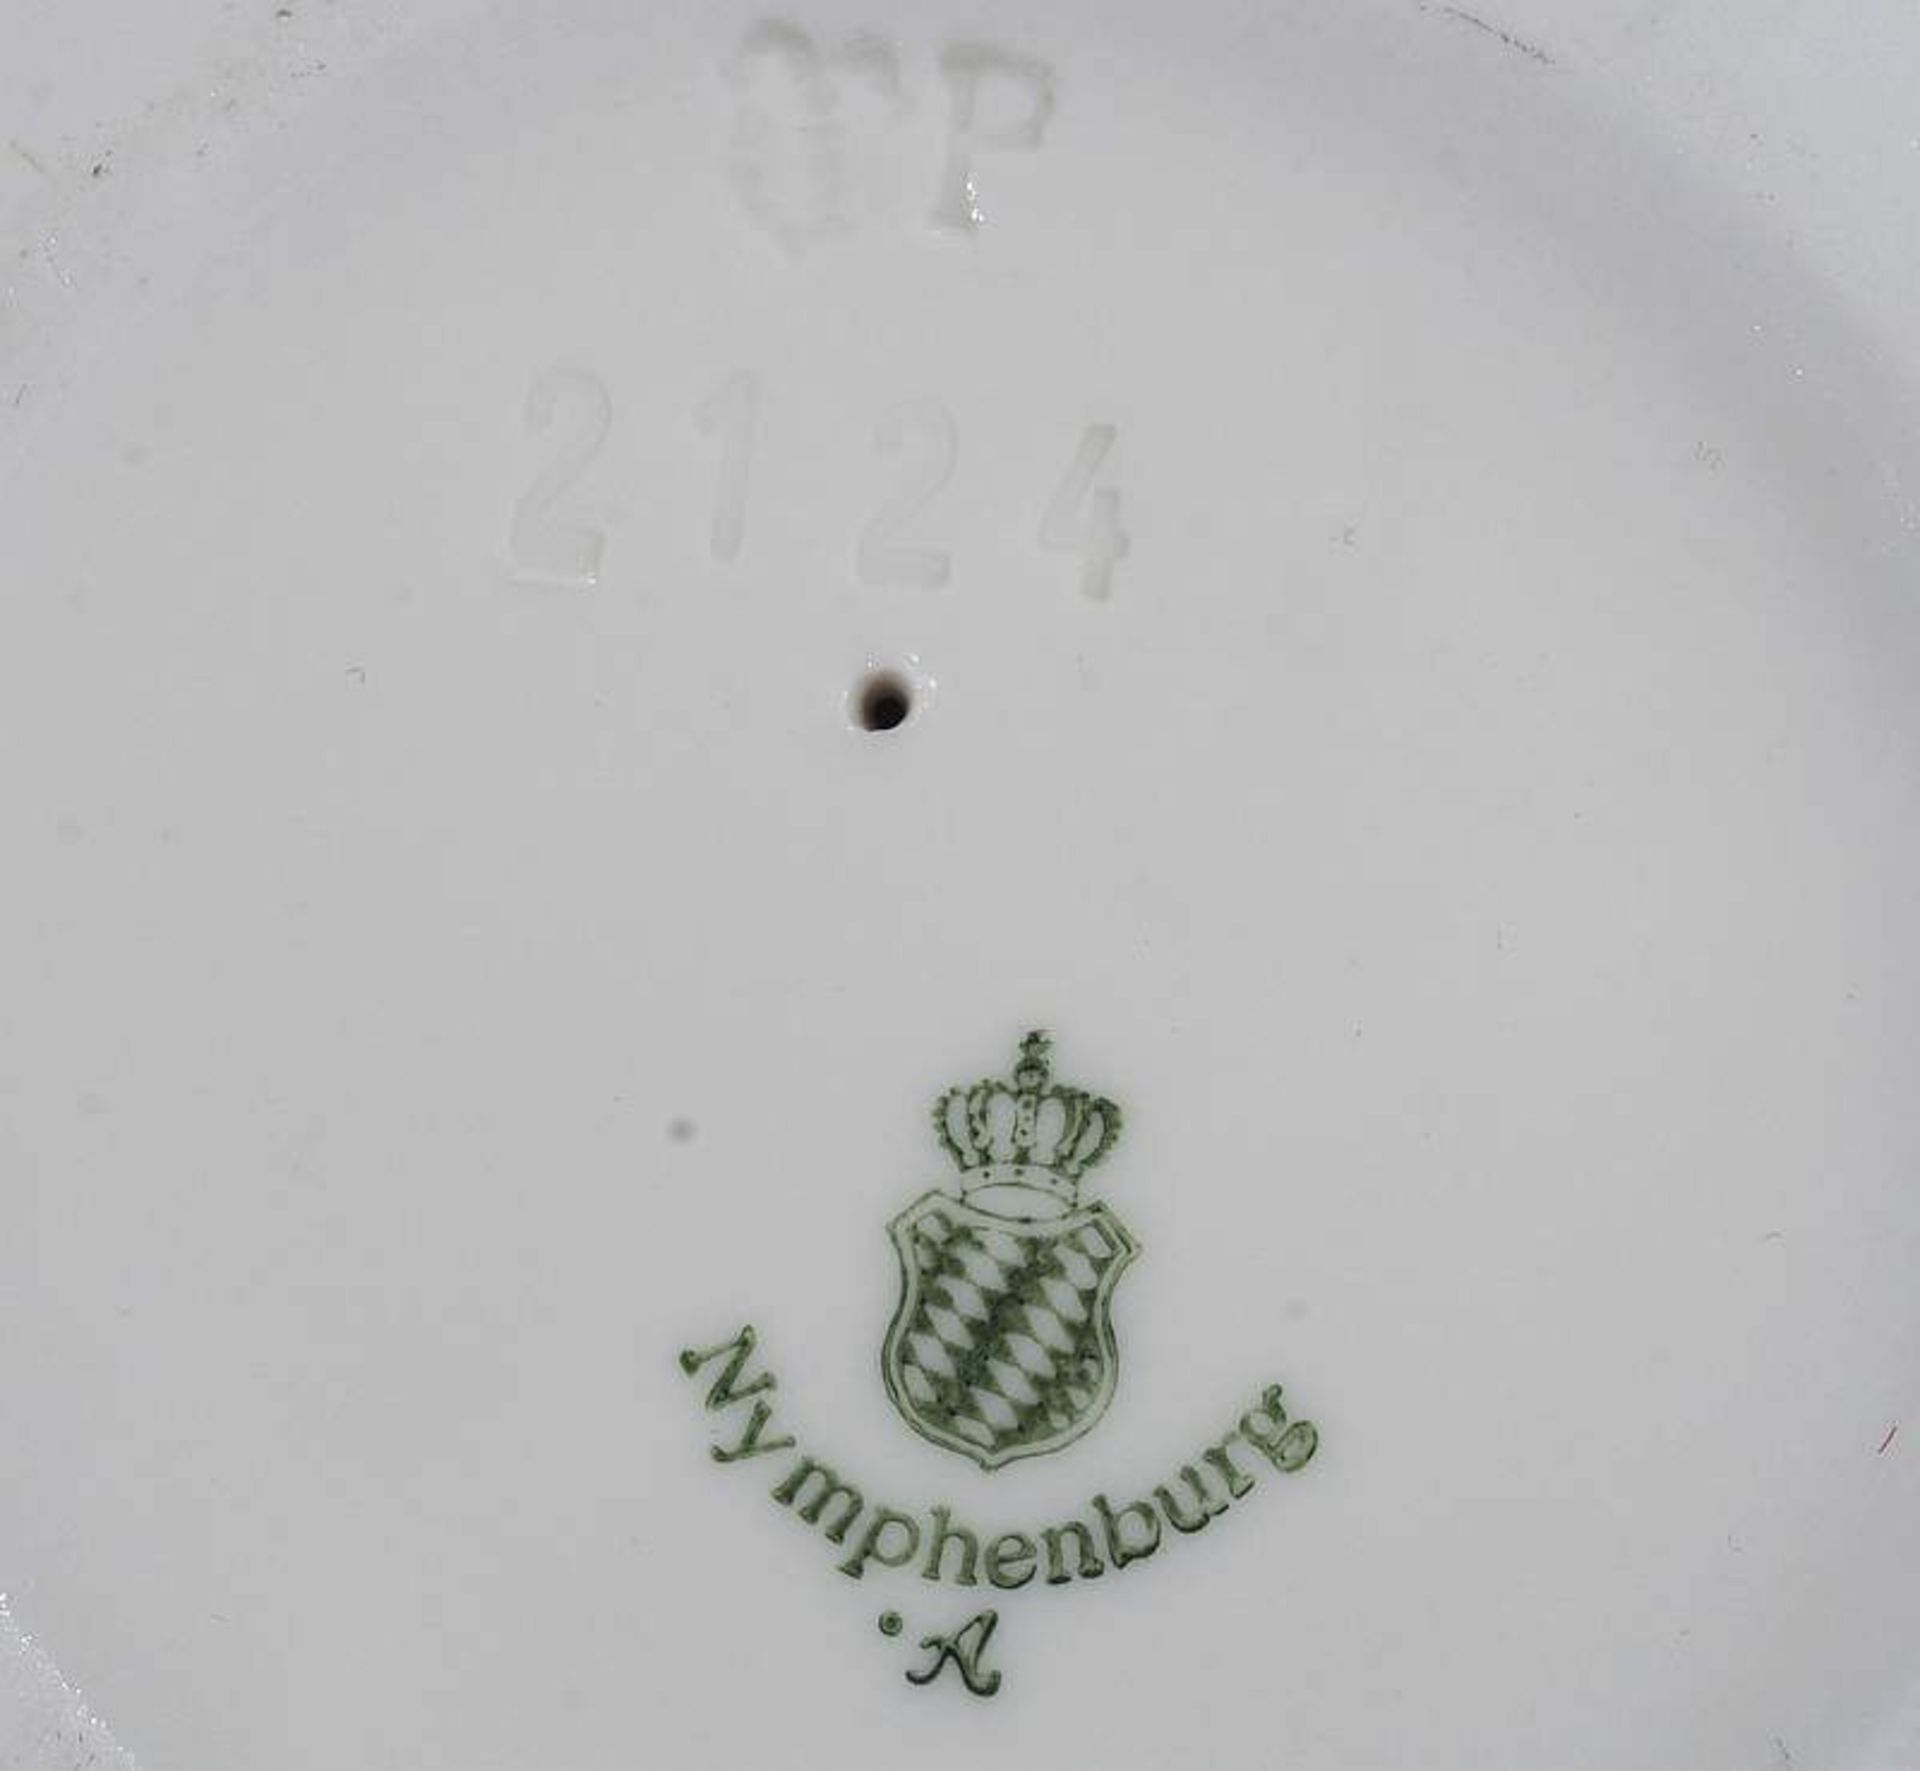 Putto mit bayerischem Wappen. NYMPHENBURG, Marke 1976 - 1997, Modellnummer 2124, Modell Entwurf - Image 6 of 6